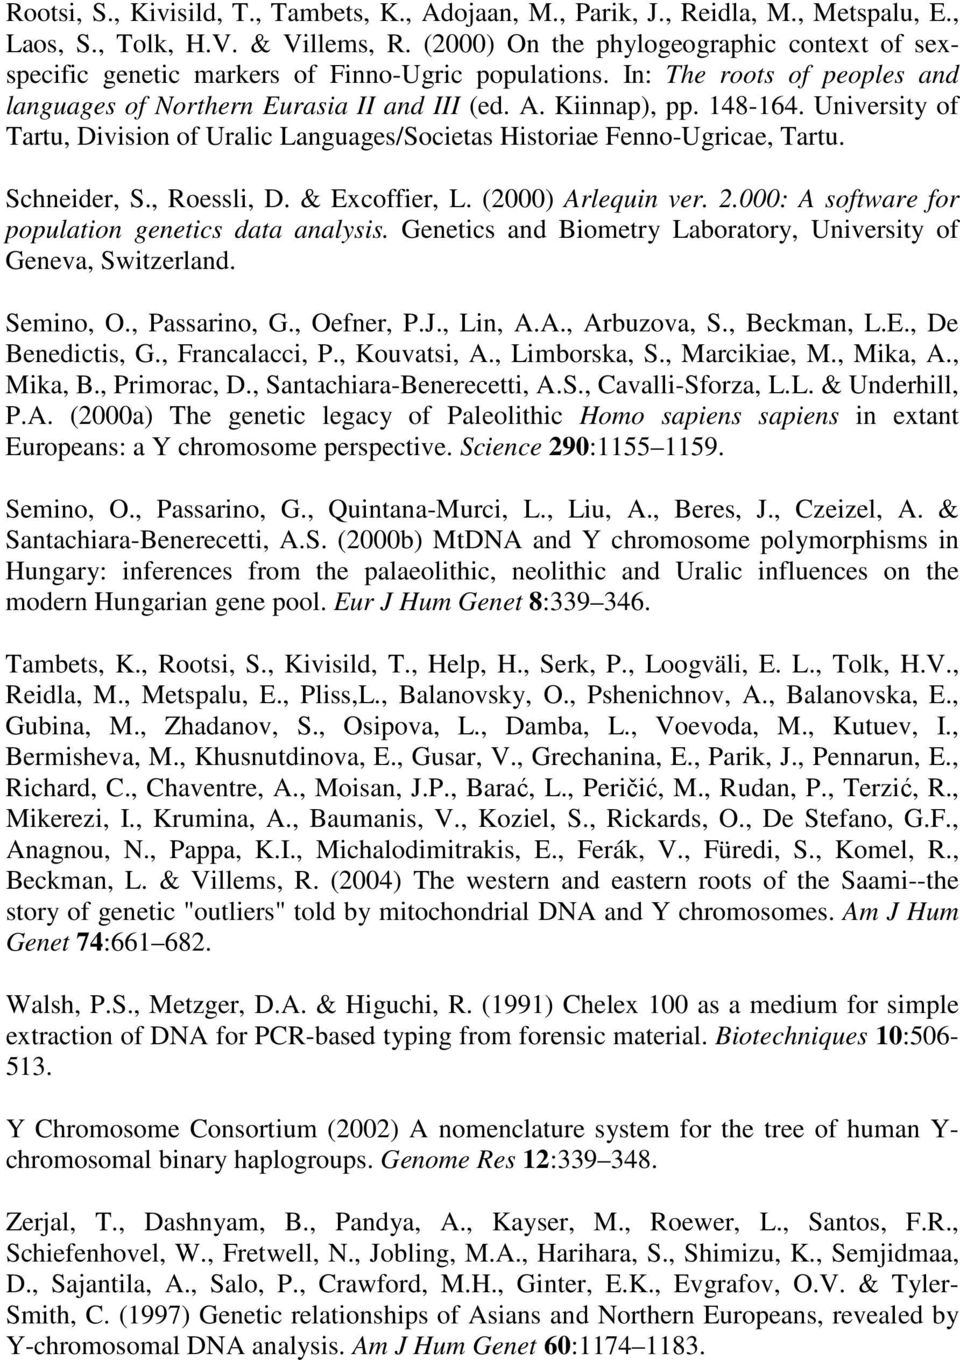 University of Tartu, Division of Uralic Languages/Societas Historiae Fenno-Ugricae, Tartu. Schneider, S., Roessli, D. & Excoffier, L. (2000) Arlequin ver. 2.